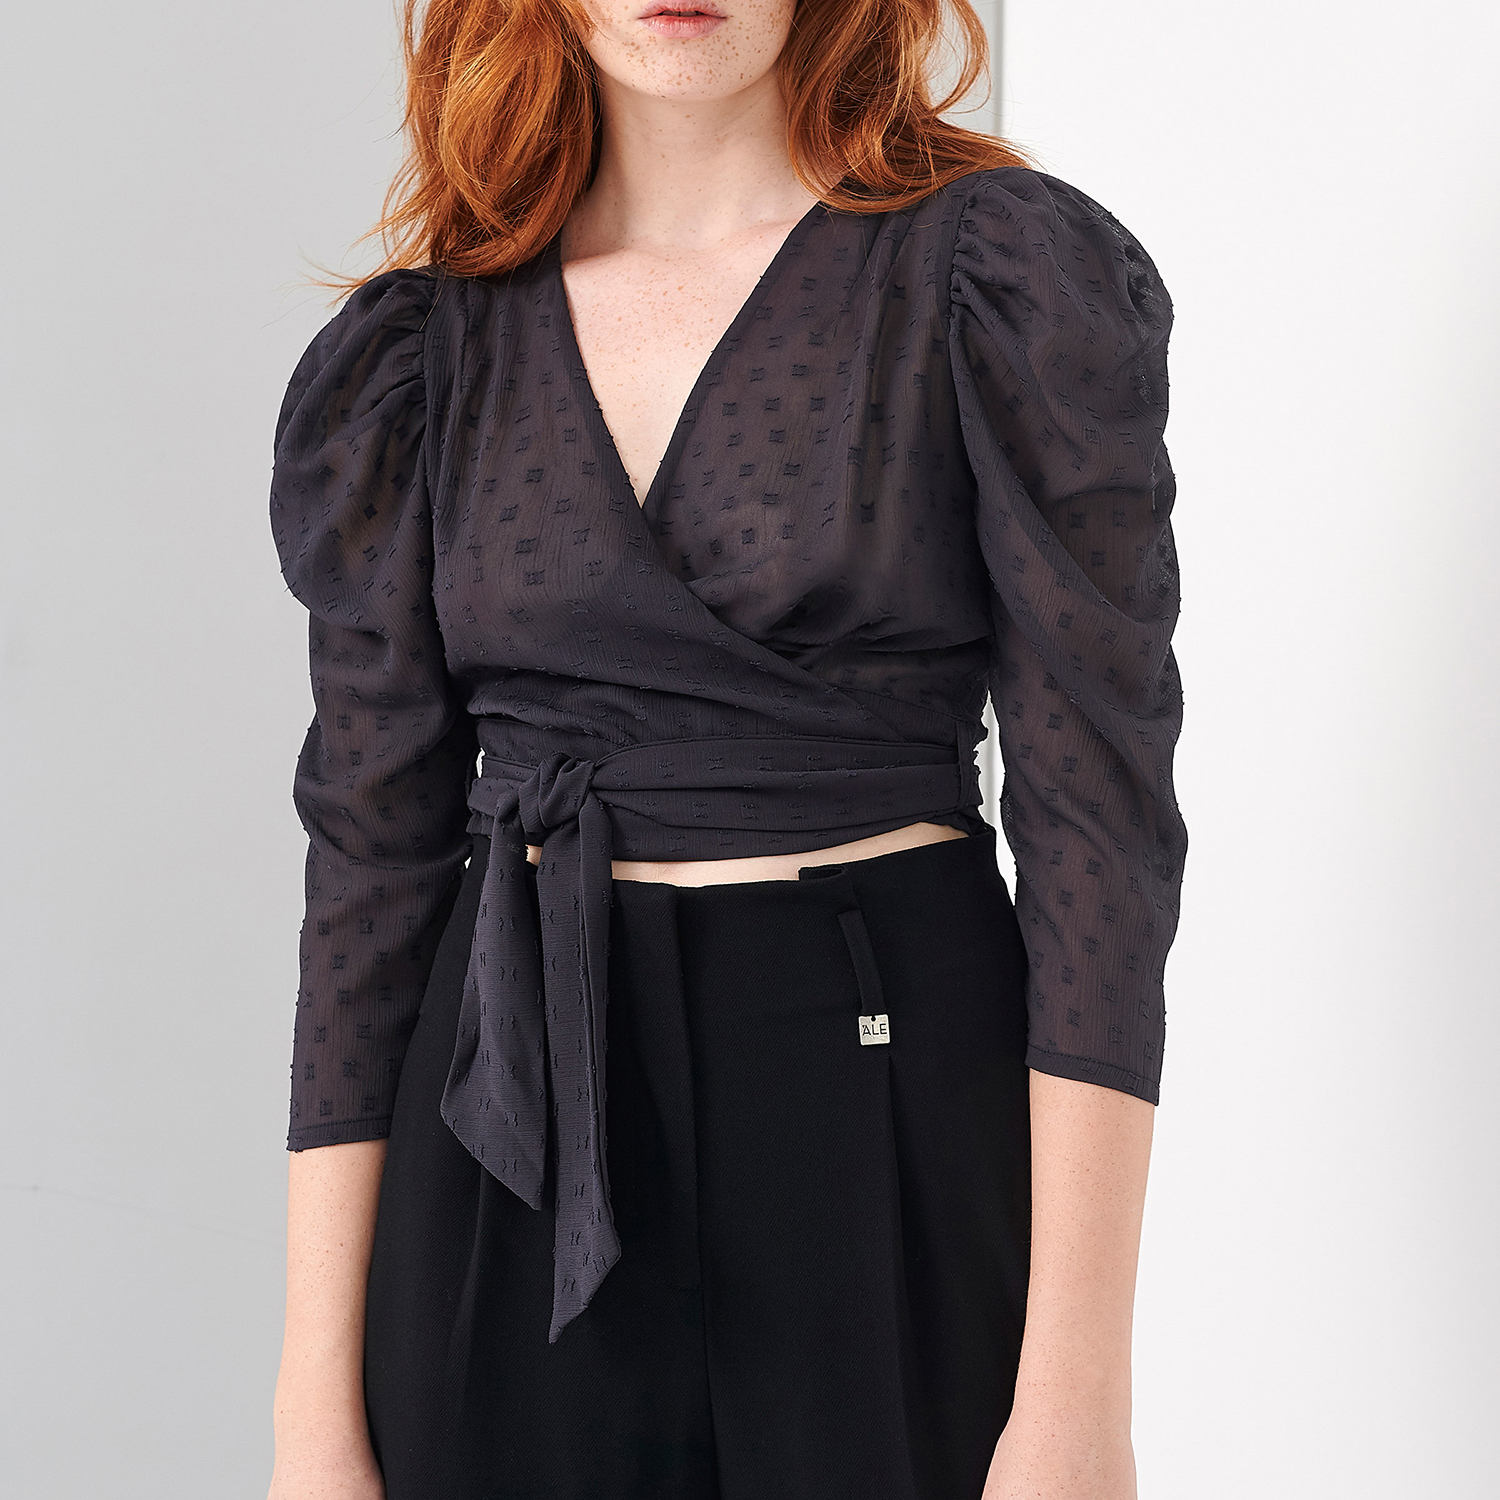 Γυναικεία/Ρούχα/Μπλούζες/Τοπ 'ALE - Γυναικείο cropped top 'ALE μαύρο